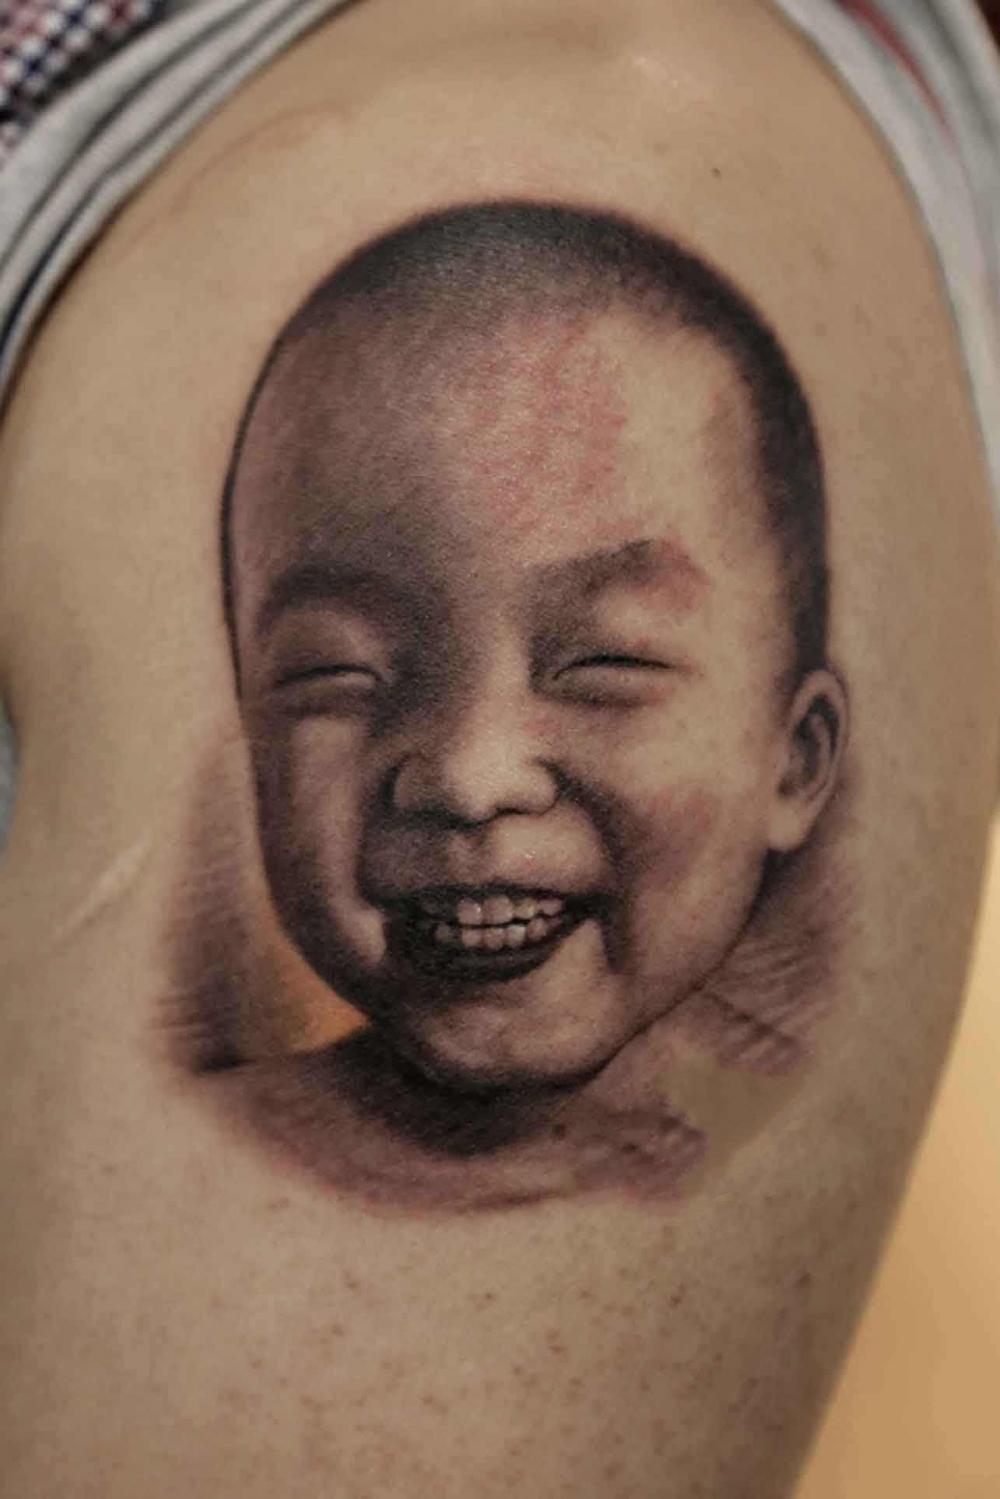 一组写实的小孩子宝宝肖像纹身图案